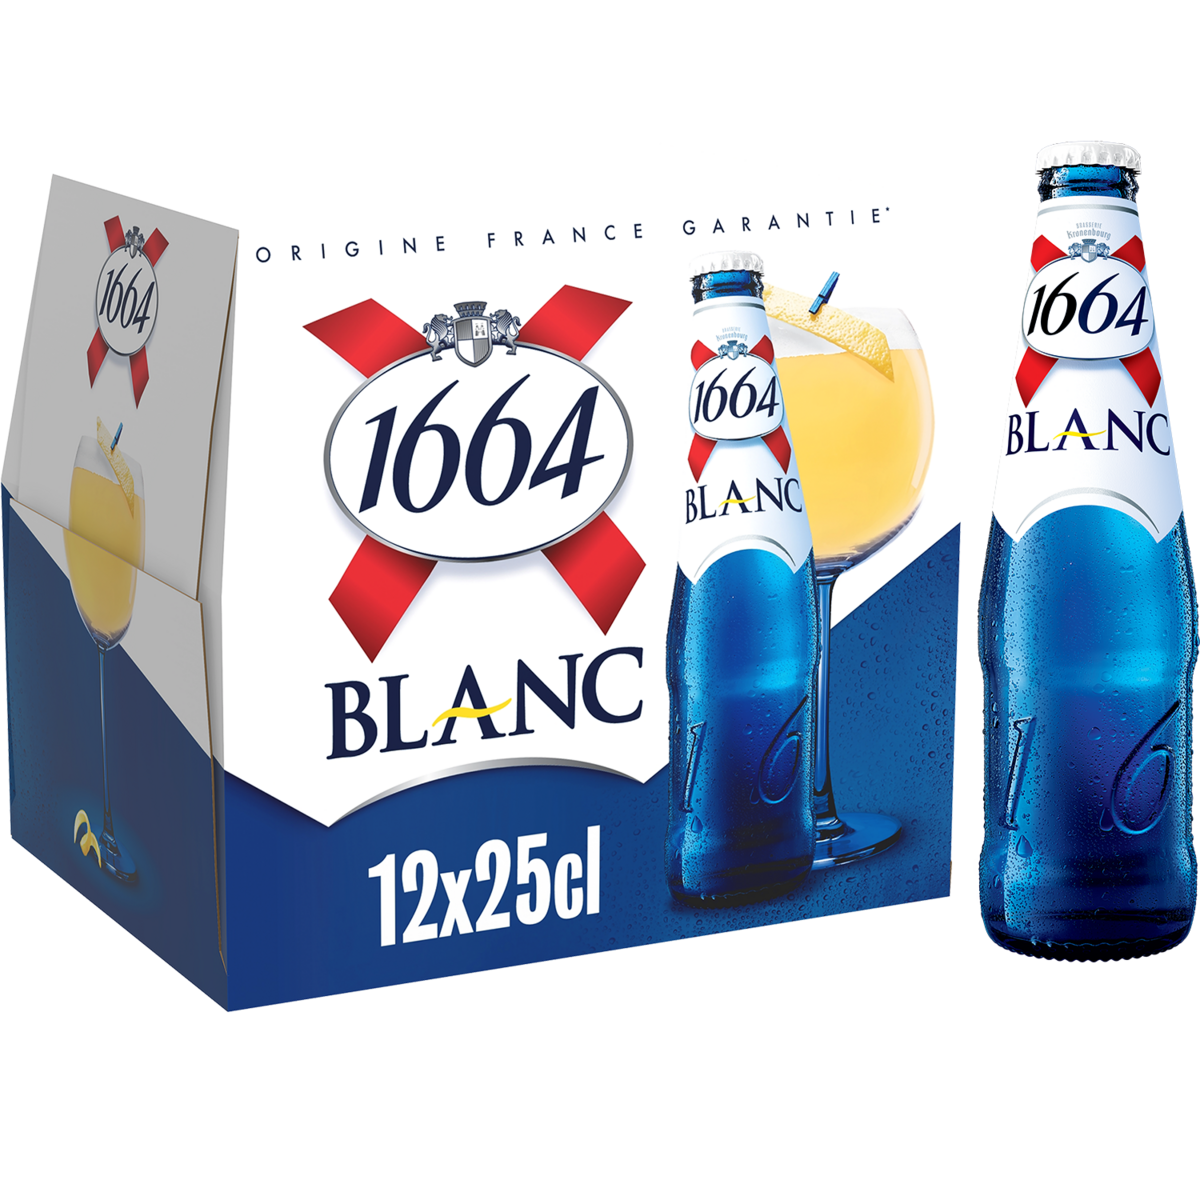 1664 Blanc Bière blanche 5% bouteilles 12x25cl